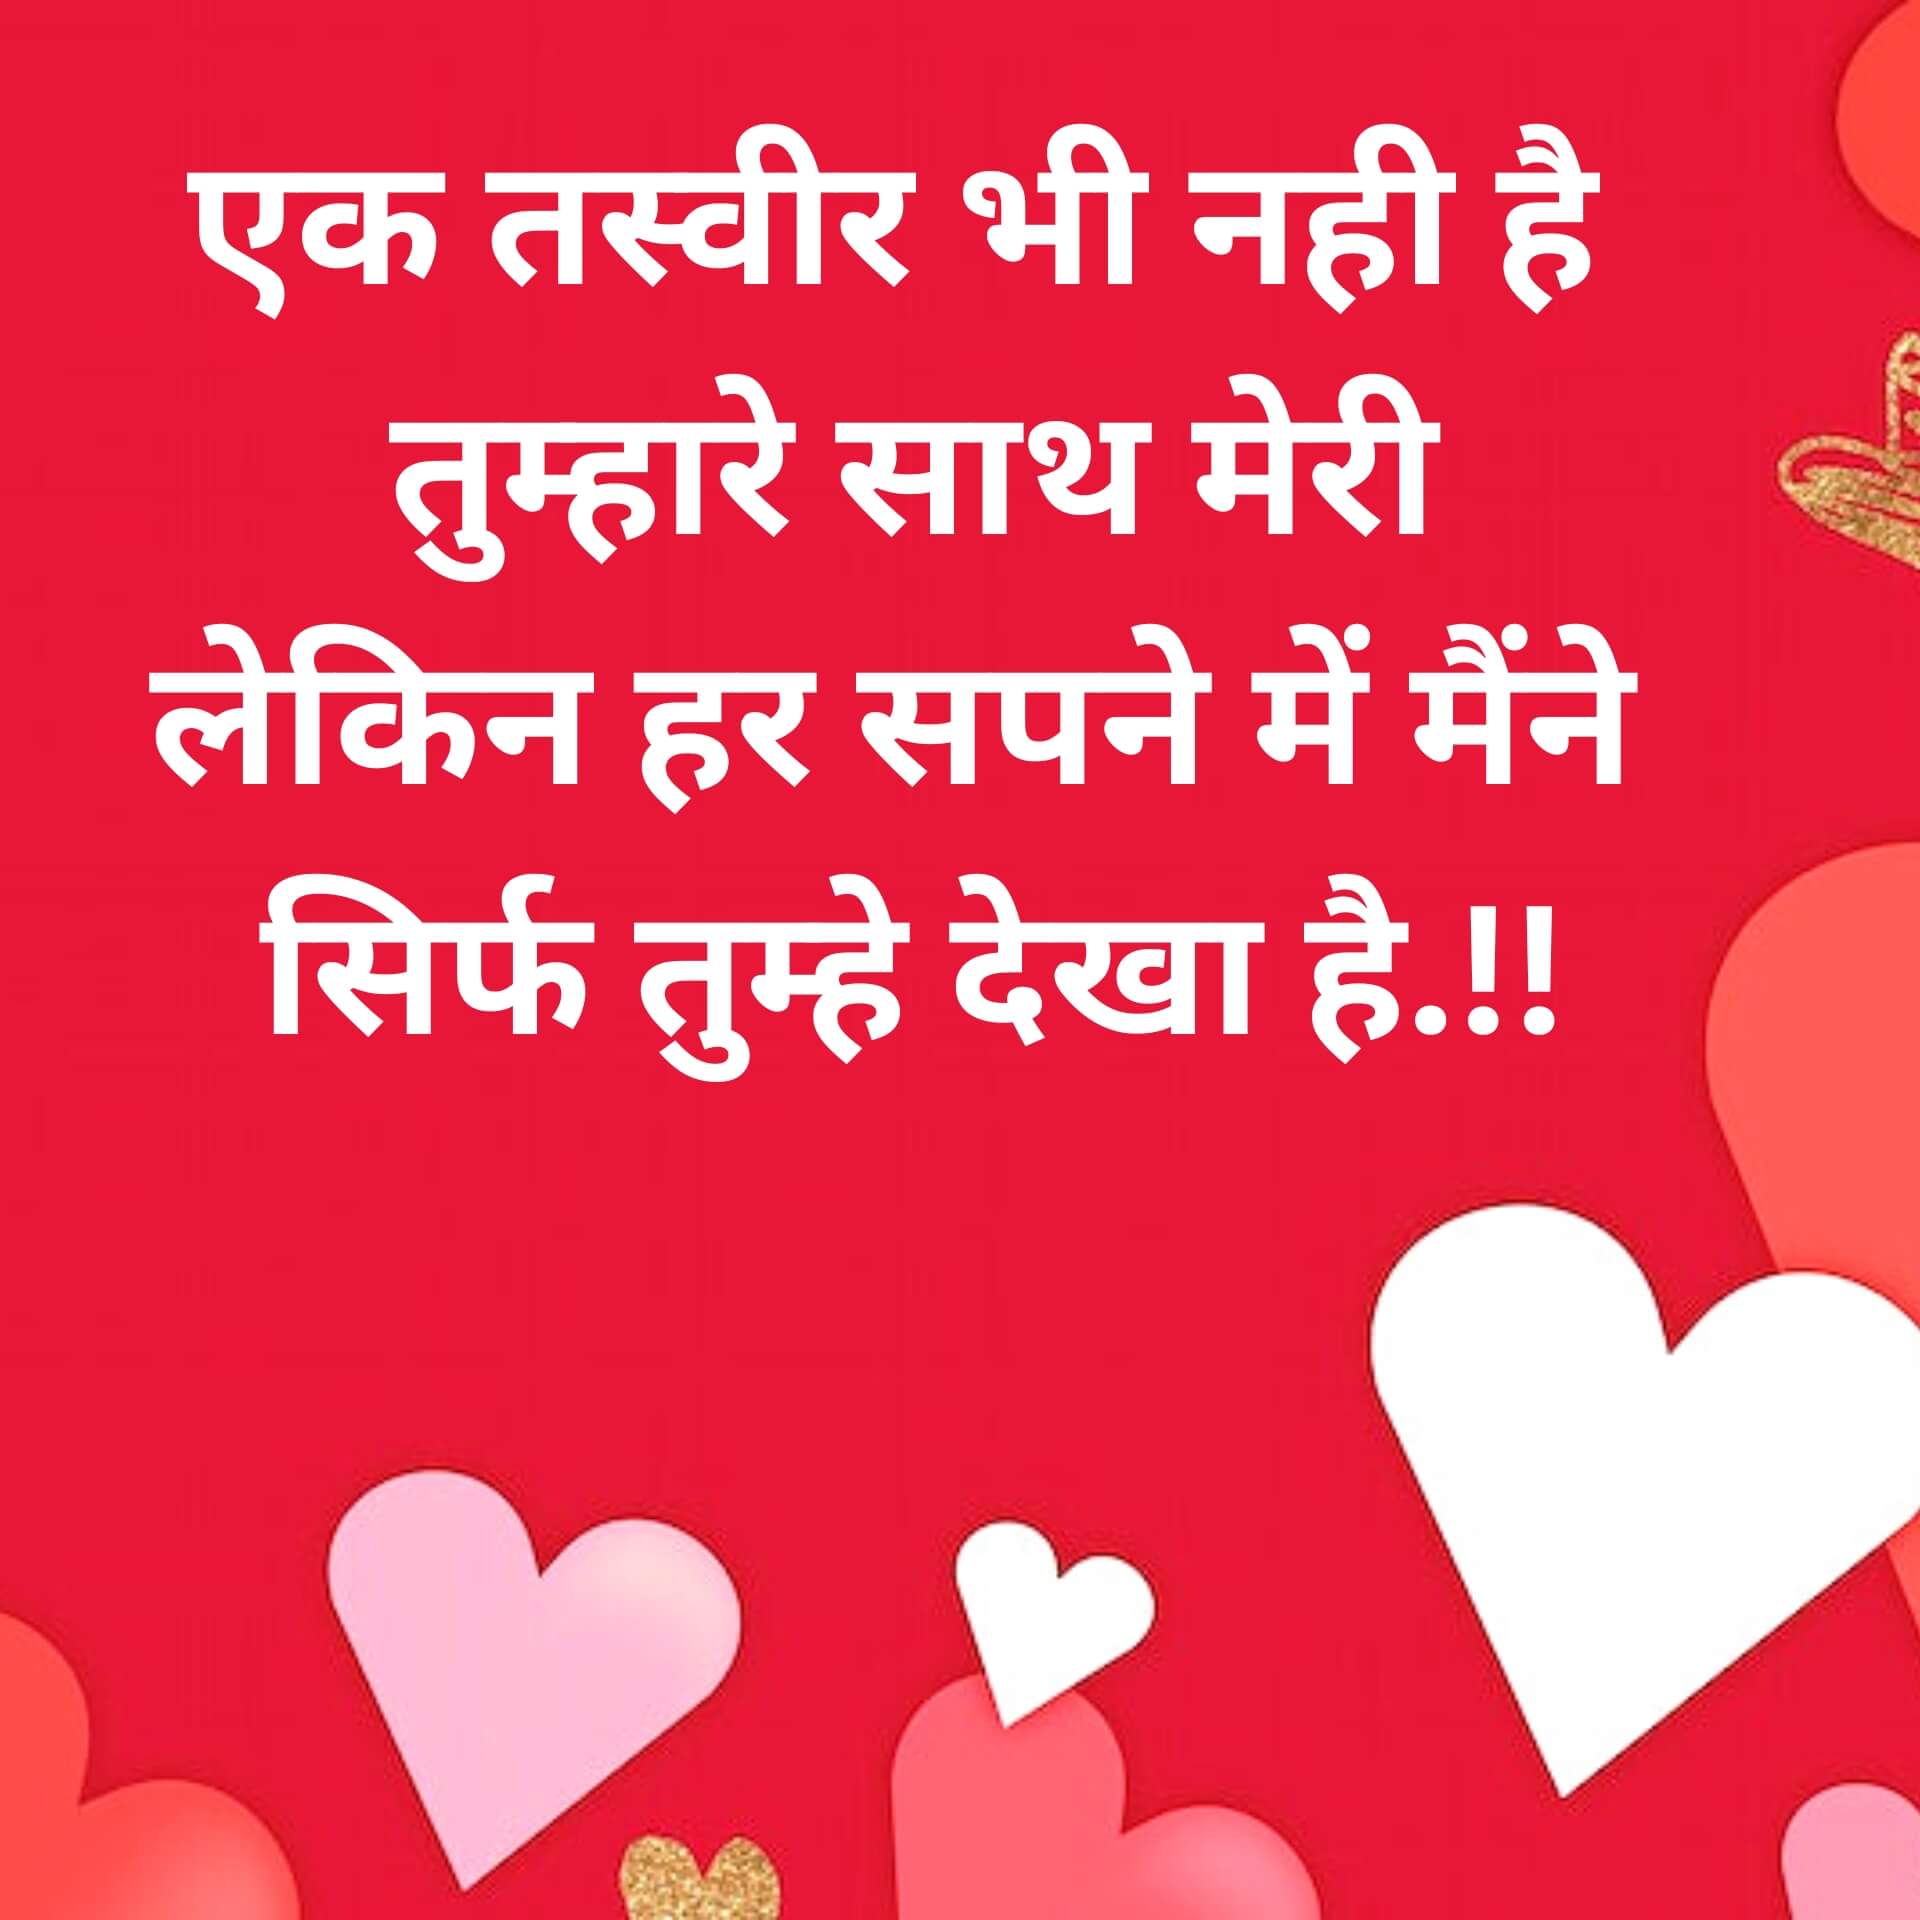 Hindi love Shayari Images